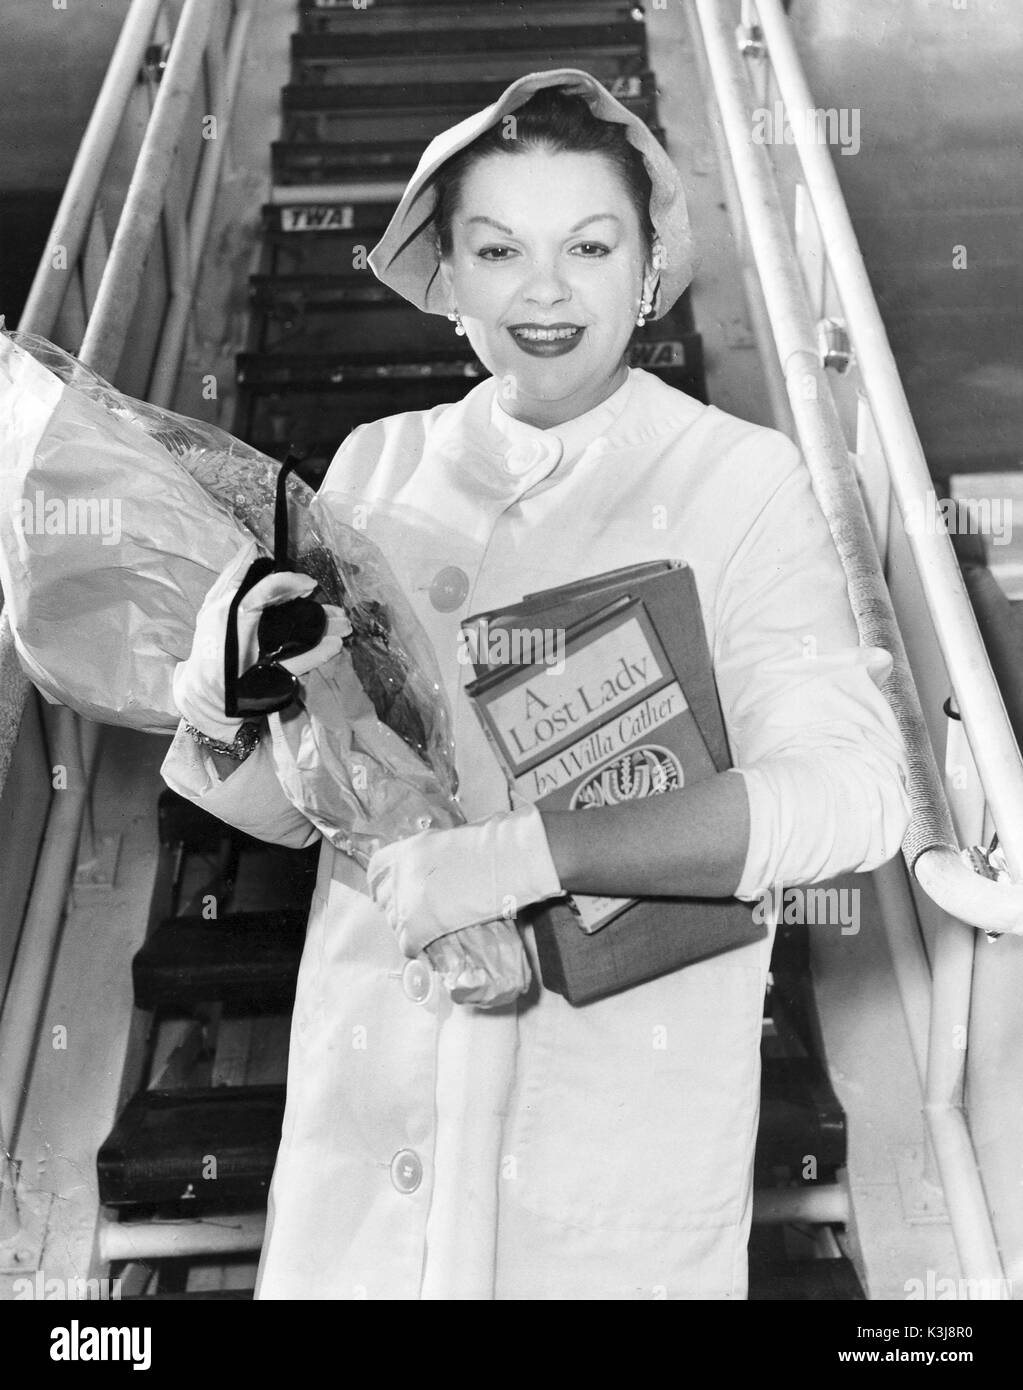 JUDY GARLAND actrice et chanteuse américaine au milieu des années 1960 Banque D'Images